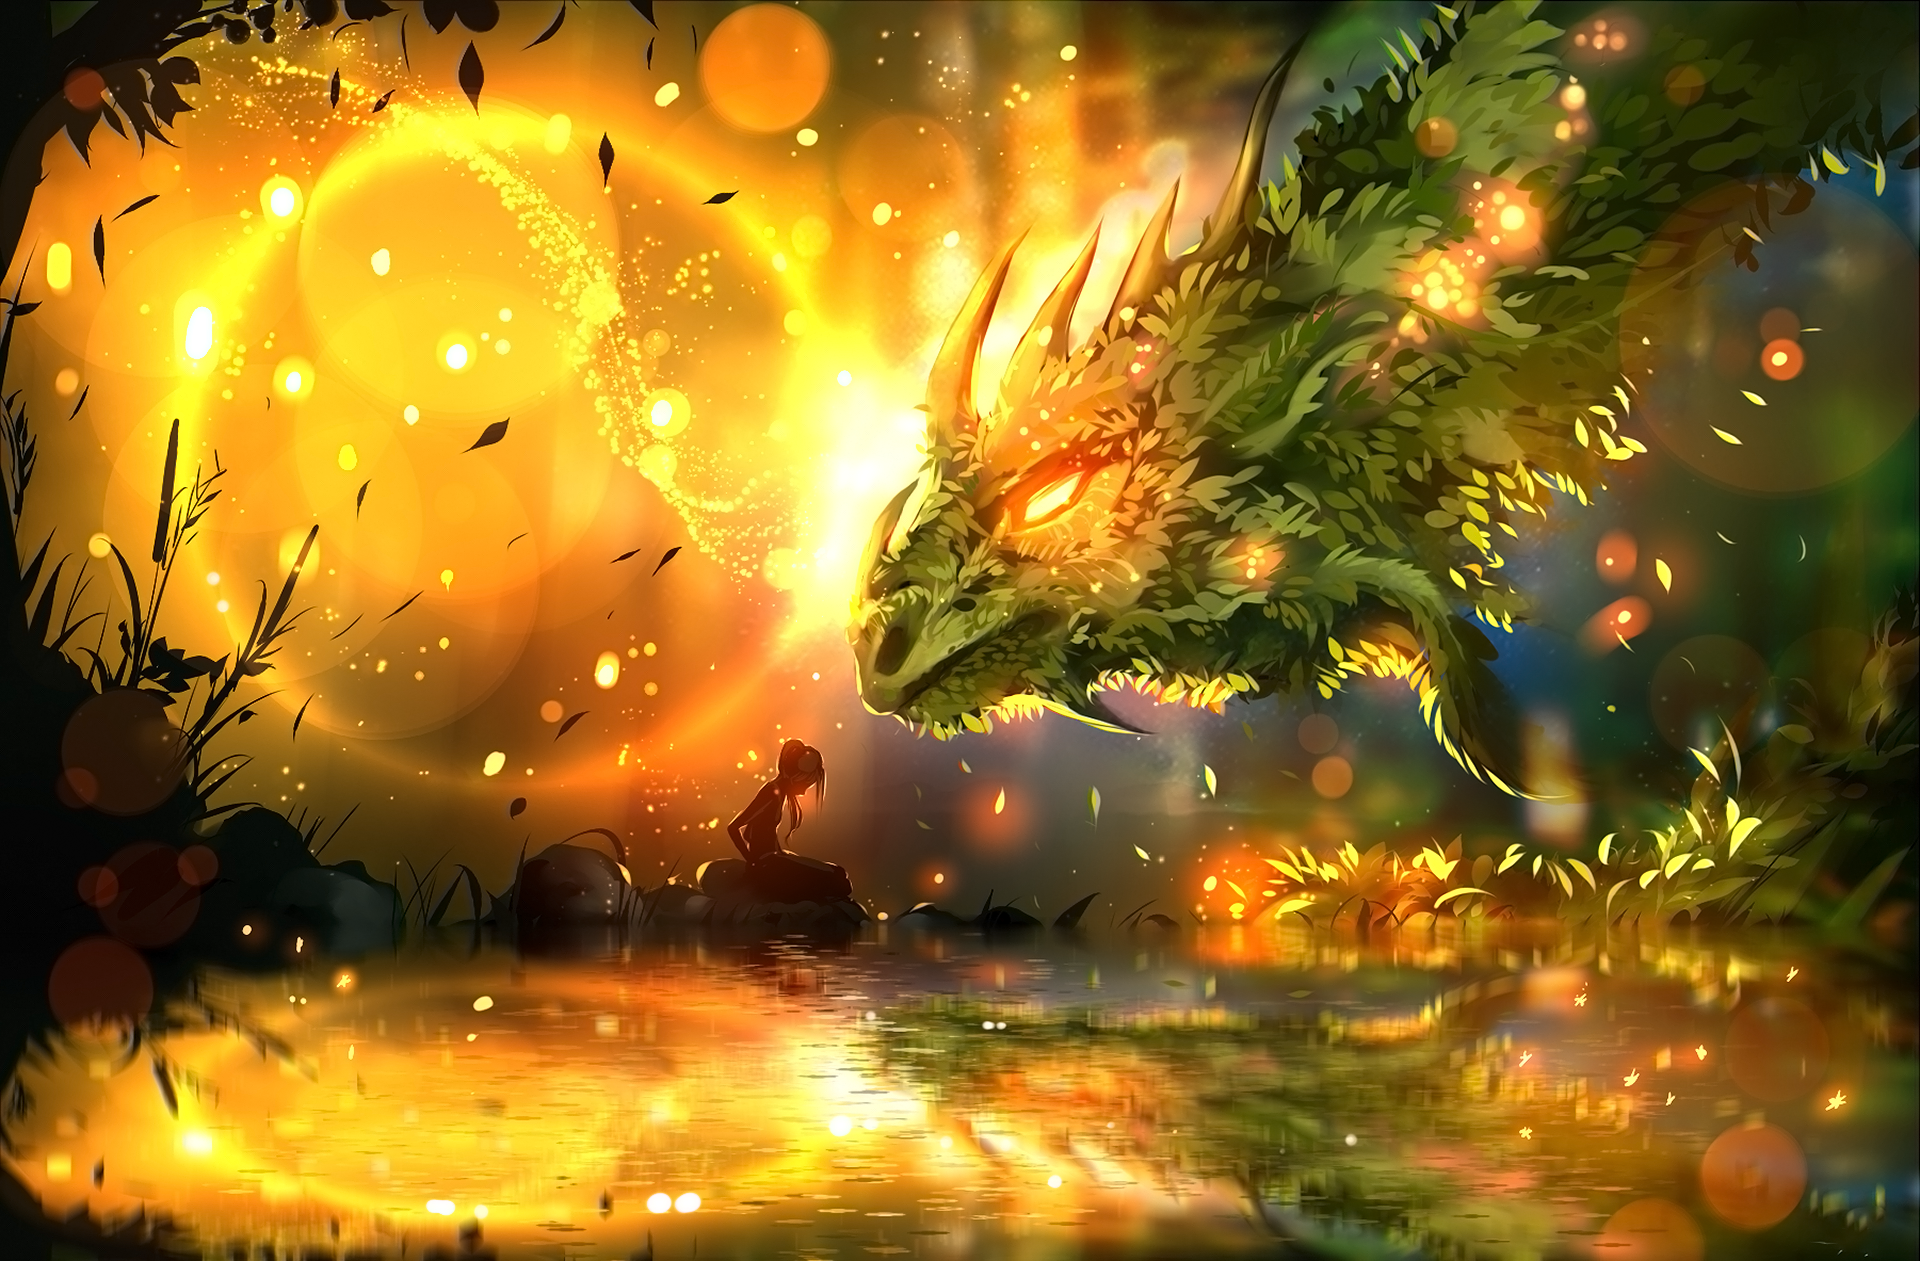 Fantasy Dragon HD Wallpaper - Bạn ham mê với thế giới huyền bí và những sinh vật huyền thoại? Hãy cùng tận hưởng hồi hộp và phấn khích với hình ảnh con rồng tuyệt đẹp trong bức tranh Fantasy Dragon HD Wallpaper này. Với đường nét và màu sắc sống động, hình nền này chắc chắn sẽ làm hài lòng mọi fan của dòng phim giả tưởng.